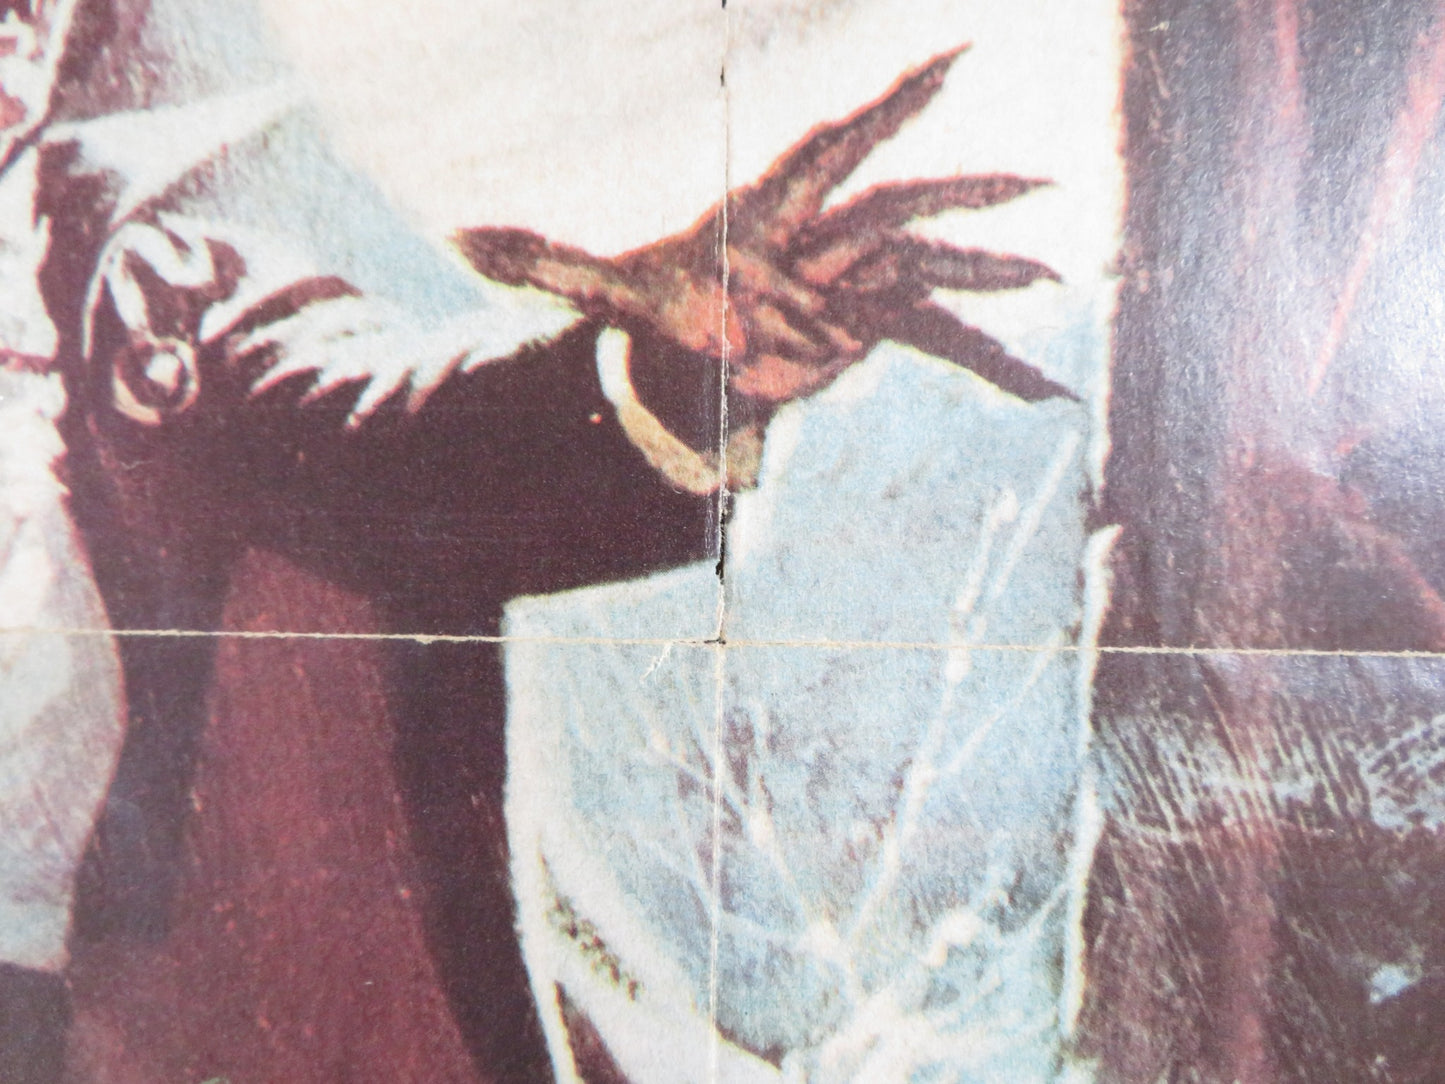 DRACULA LIVES POSTER MARVEL COMICS 1974